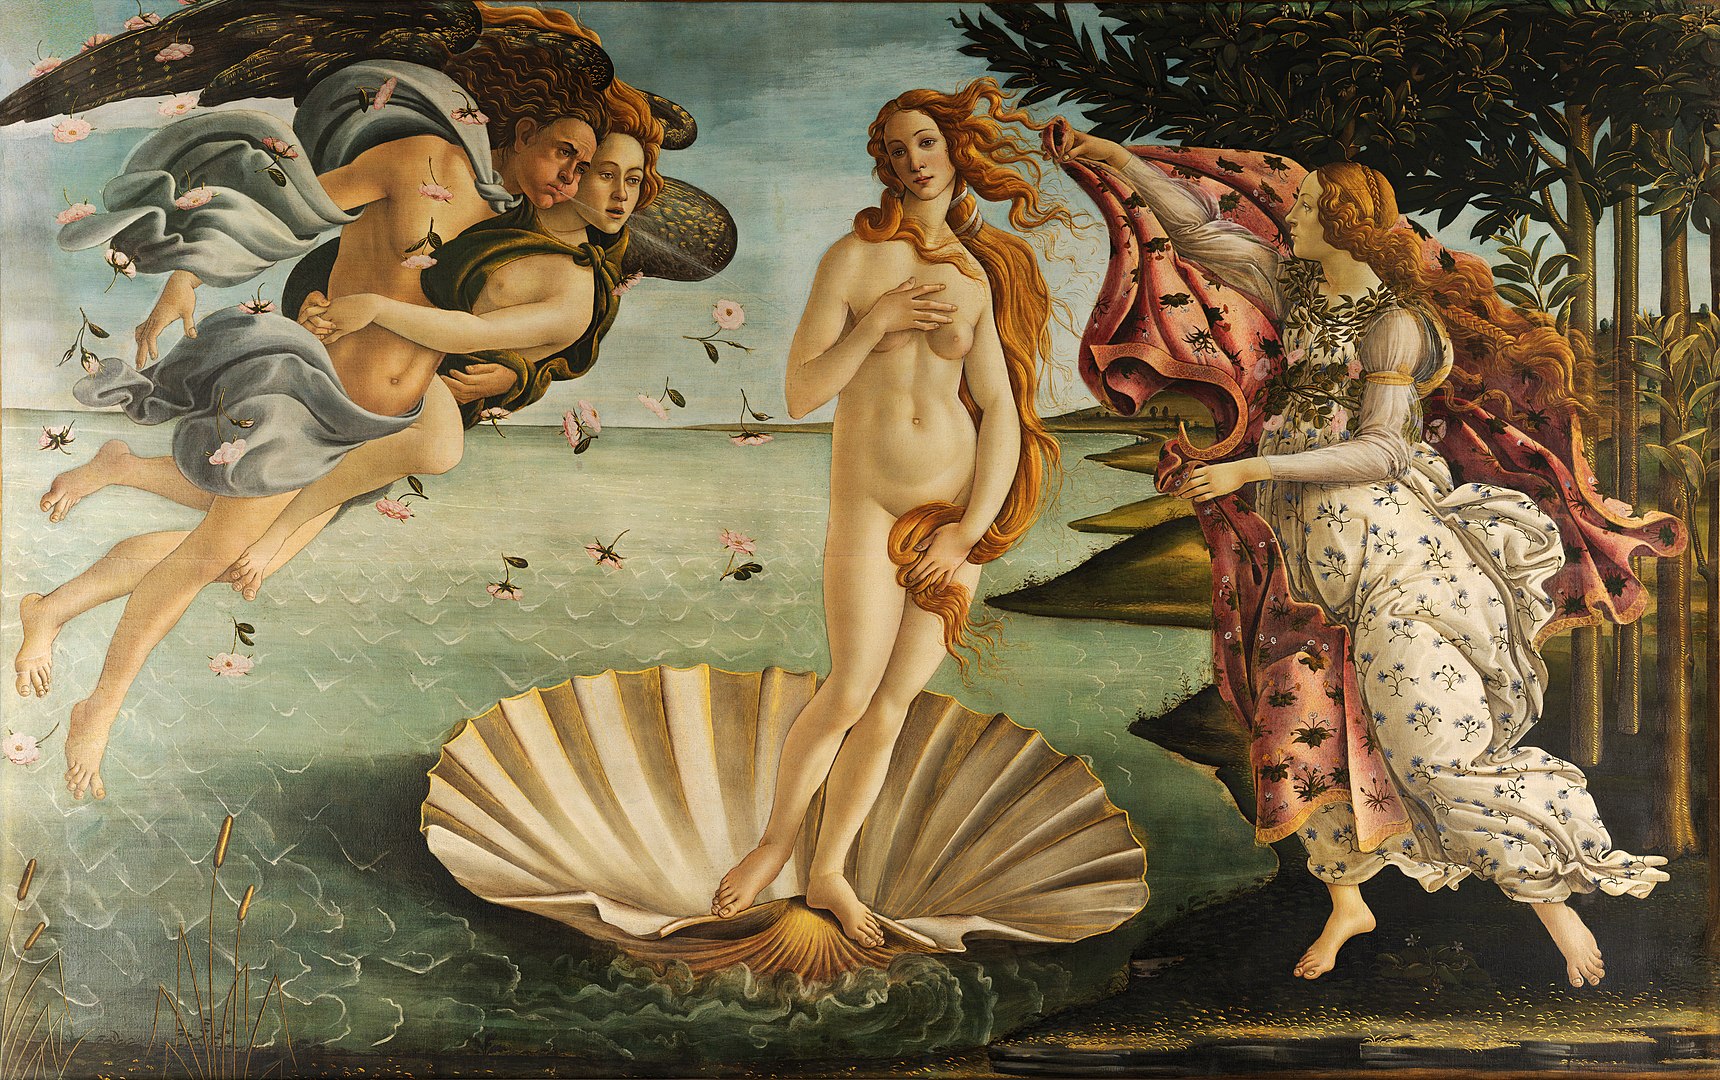 La nascita di Venere by Sandro Botticelli - 1484-1486 - 172,5 x 278,5 cm 